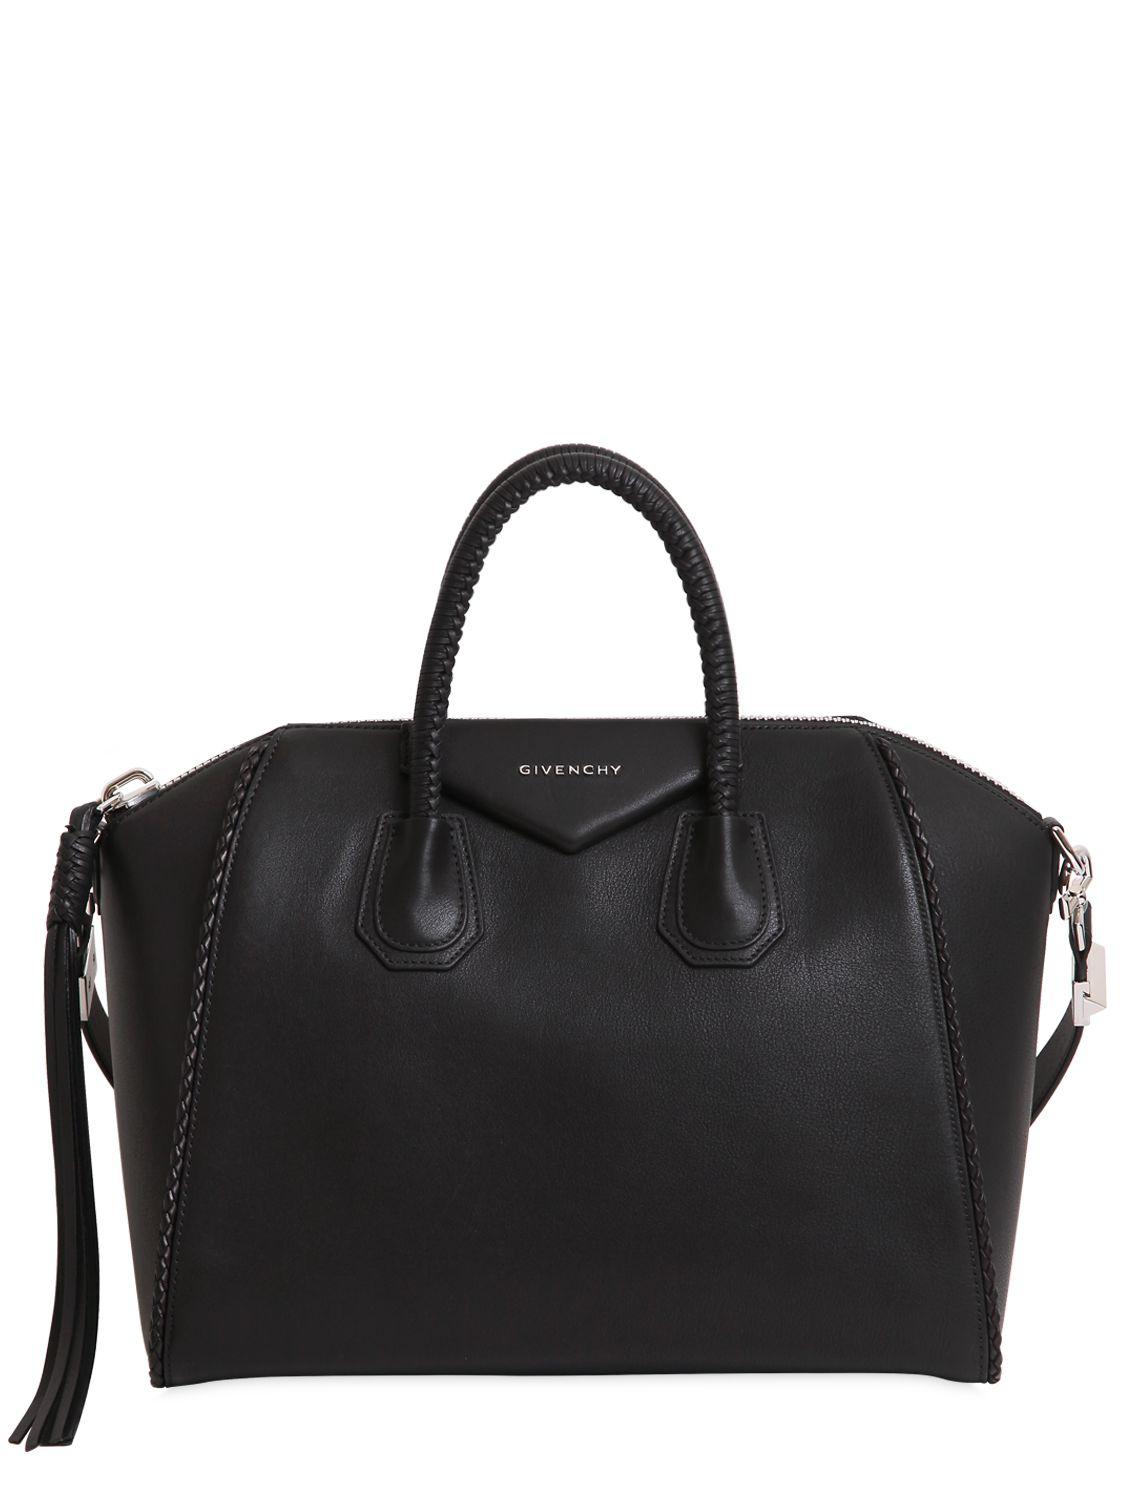 Lyst - Givenchy Medium Antigona Braided Leather Bag in Black